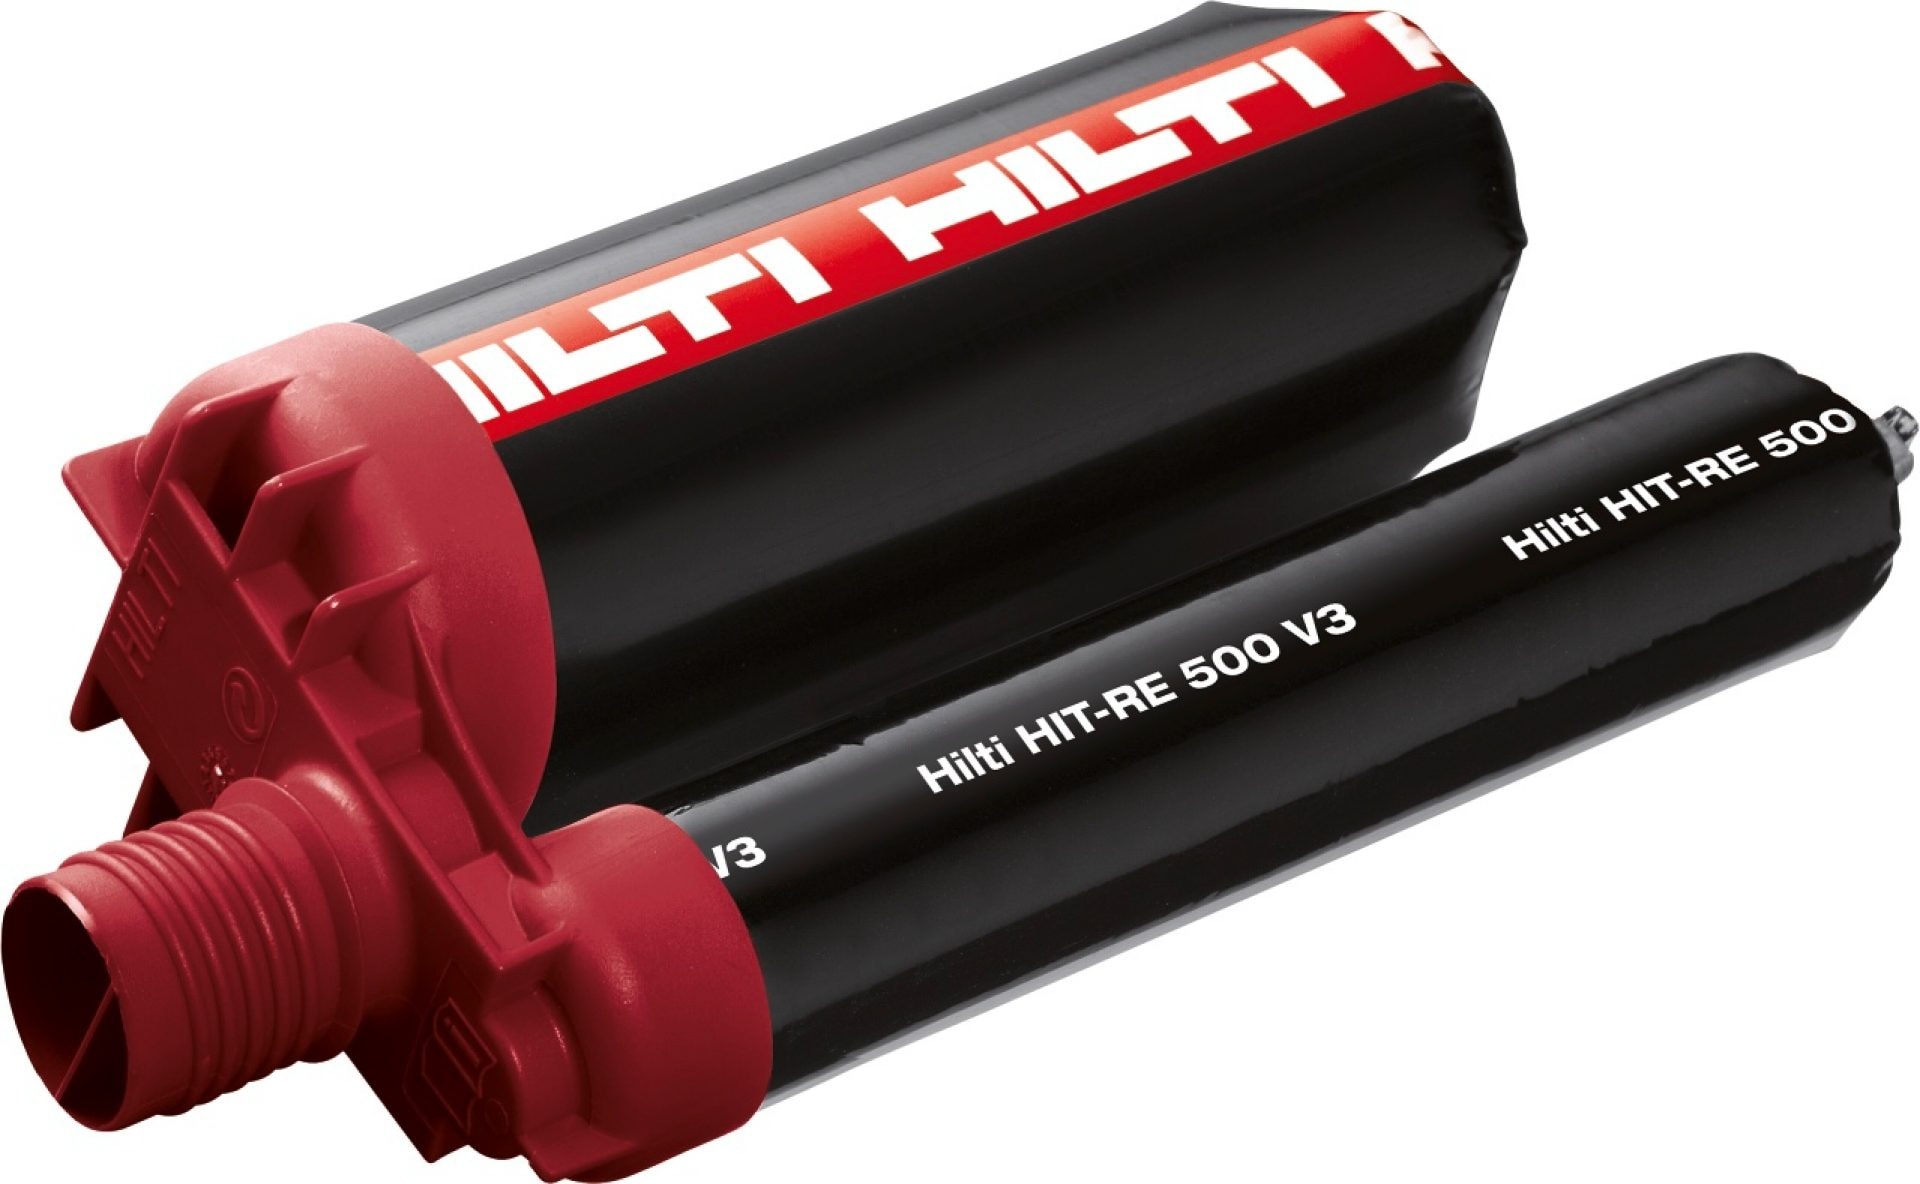 Hilti HIT-RE 500 V3 epoxy mortar